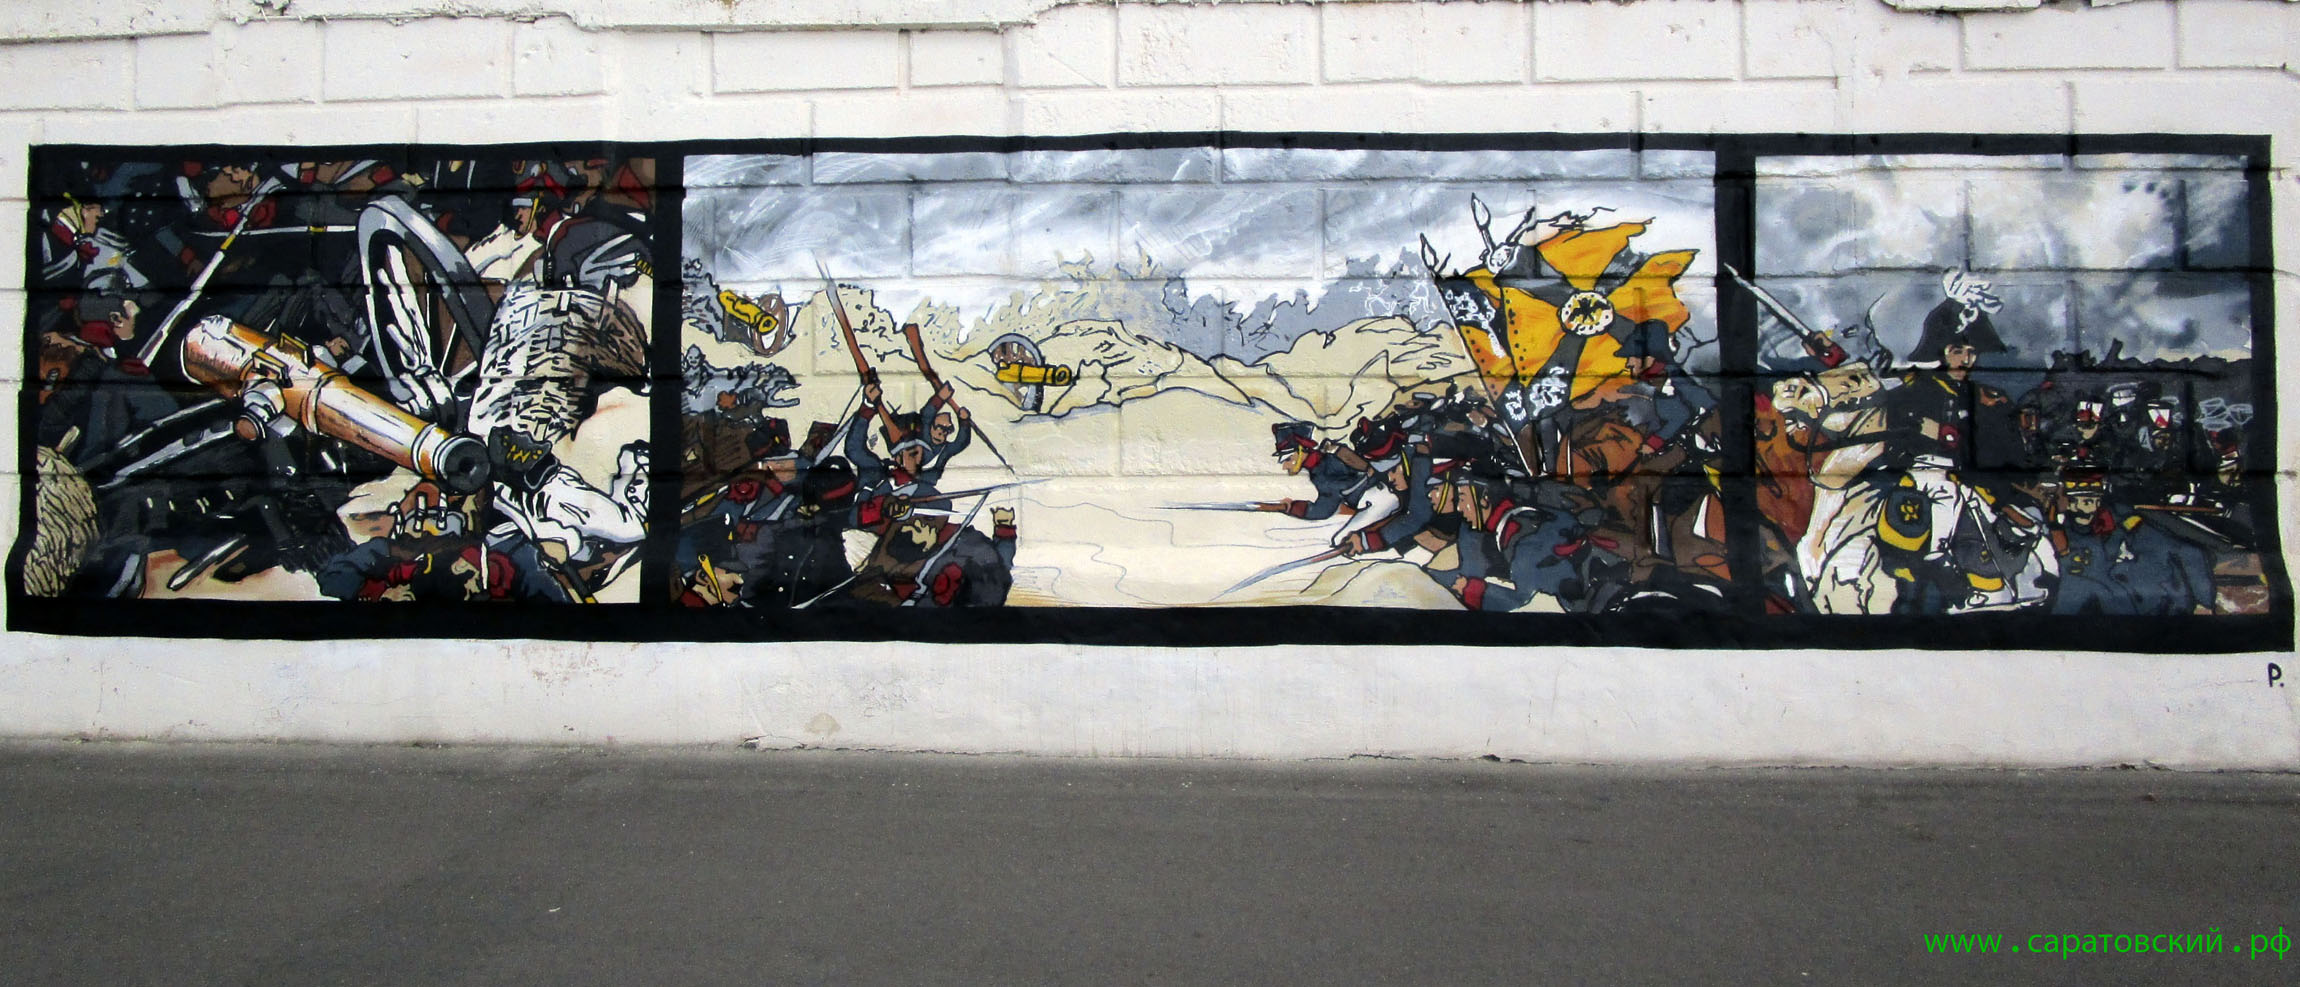 Набережная Саратова, граффити: Отечественная война 1812 года и Саратов